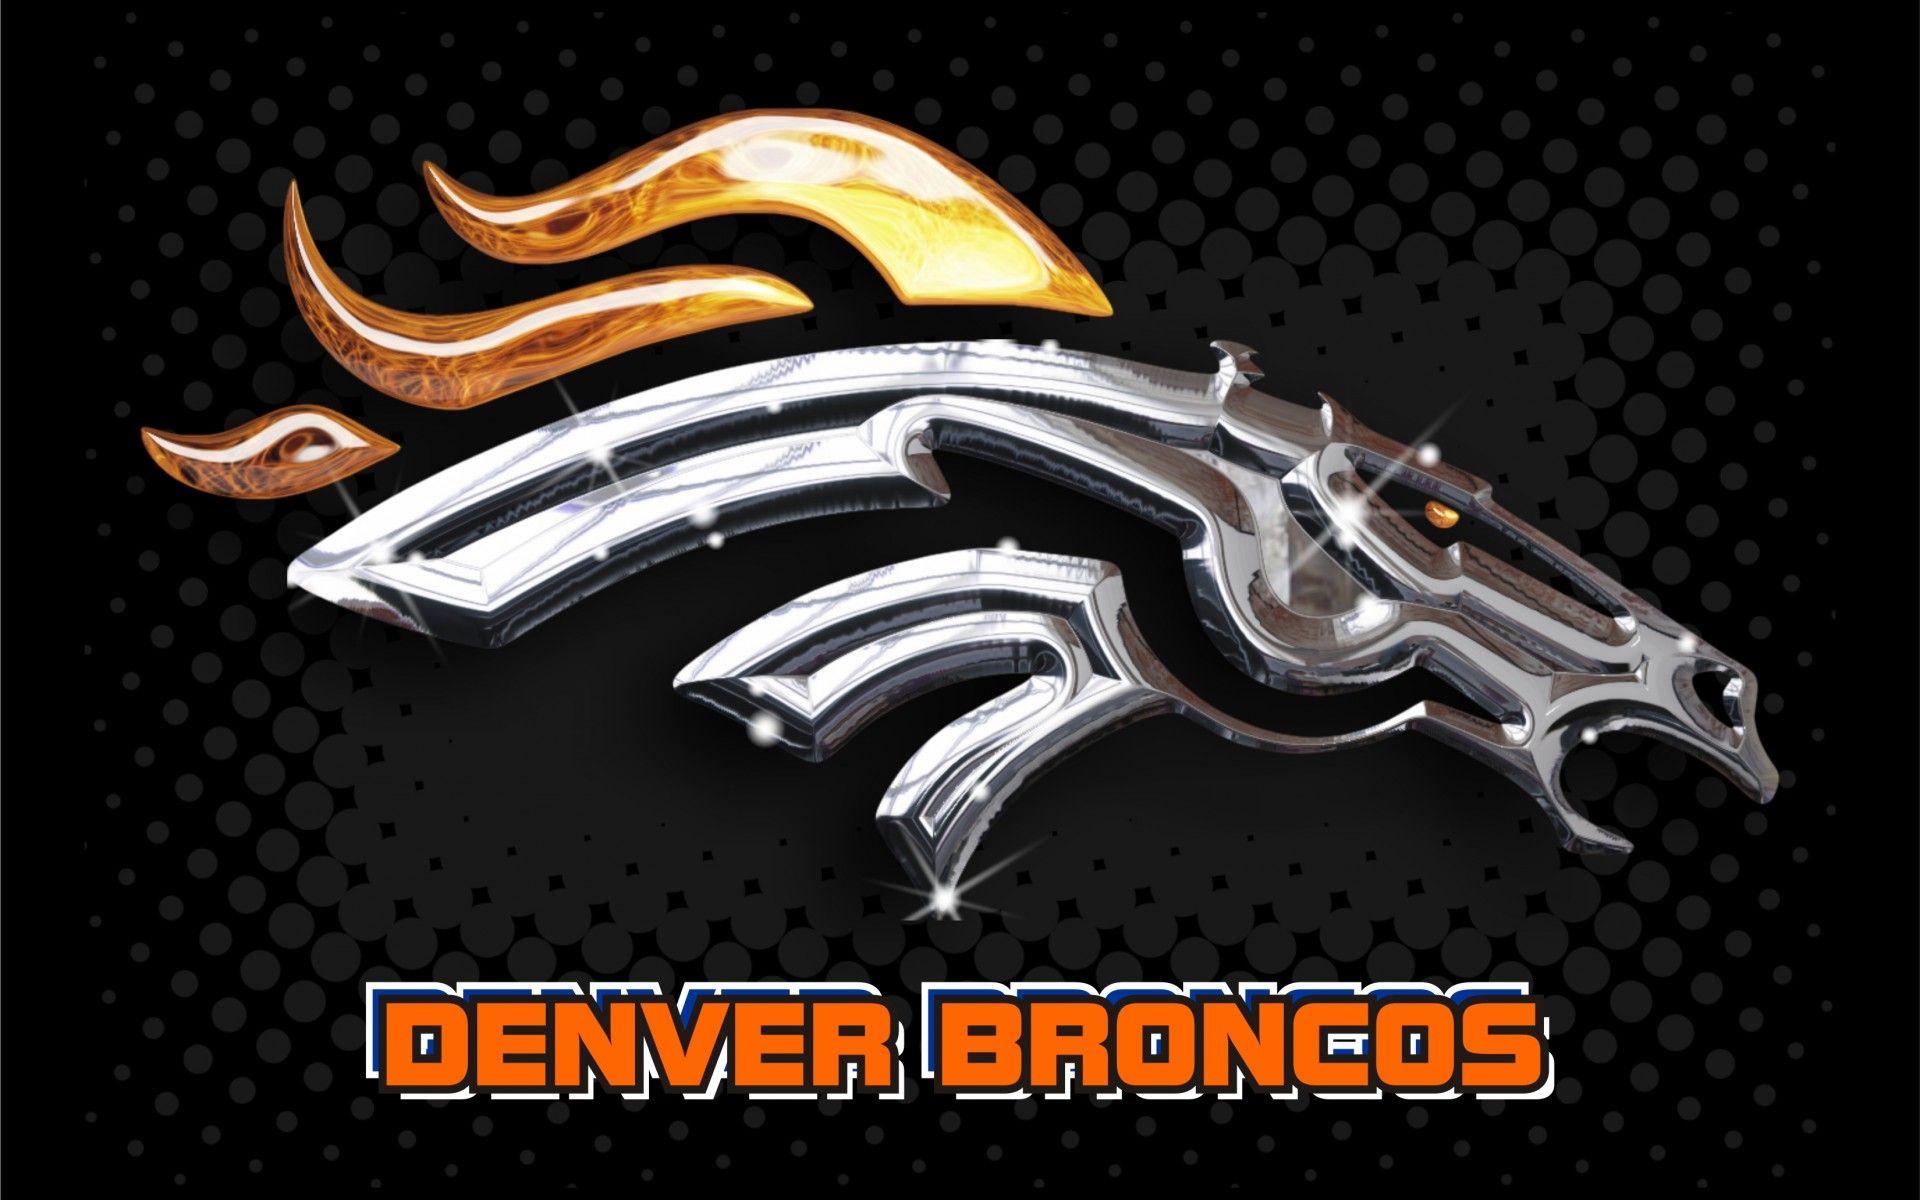 Denver Broncos 2014 NFL Logo Wallpaper Wide or HD